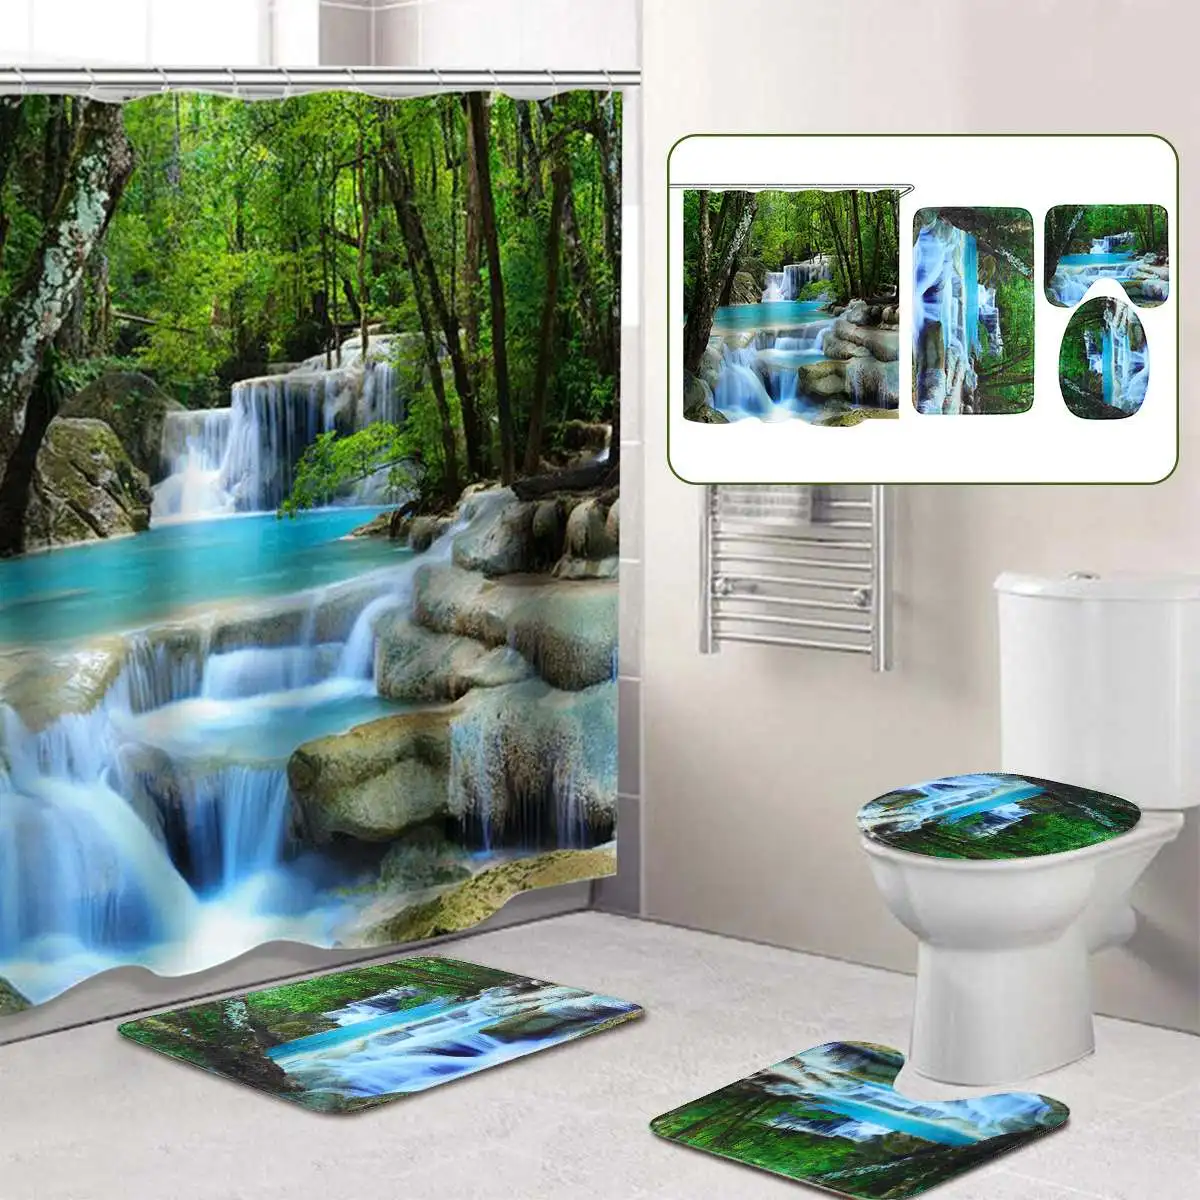 3D водопад пейзаж водонепроницаемый занавеска для душа для ванной Пейзаж Деревья цветок коврик для ванной комплект пьедестал коврик крышка Туалет крышка - Цвет: C set